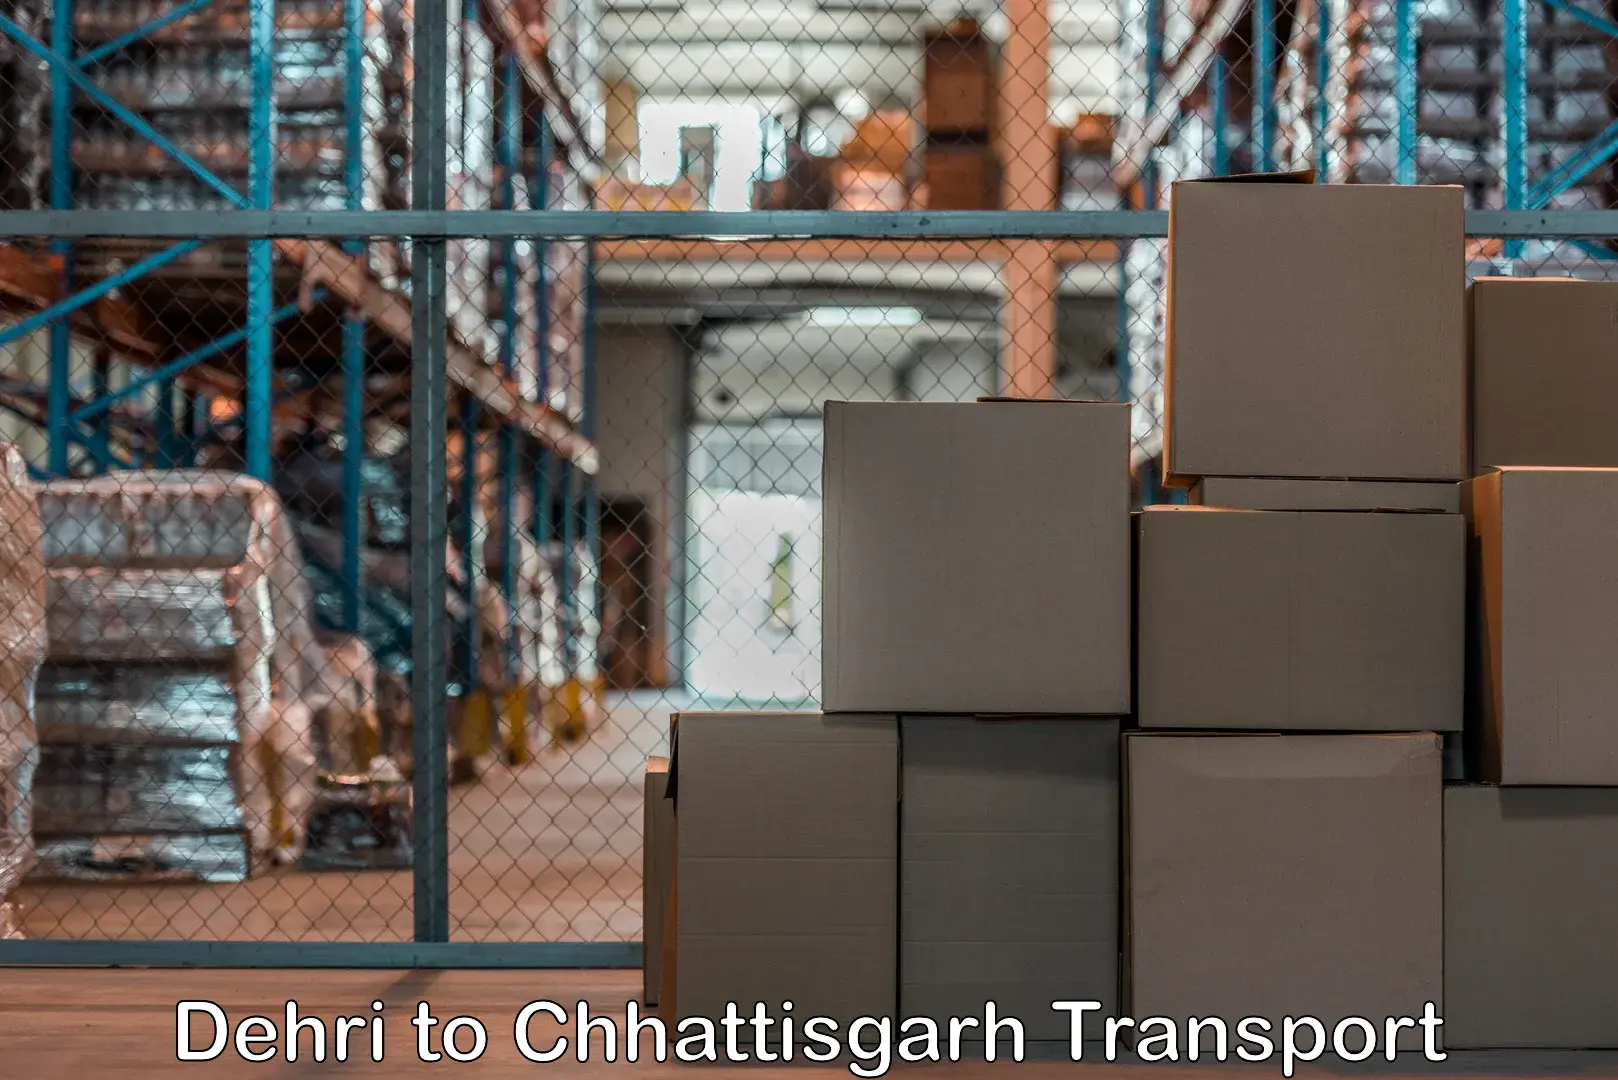 Air cargo transport services in Dehri to Chirimiri